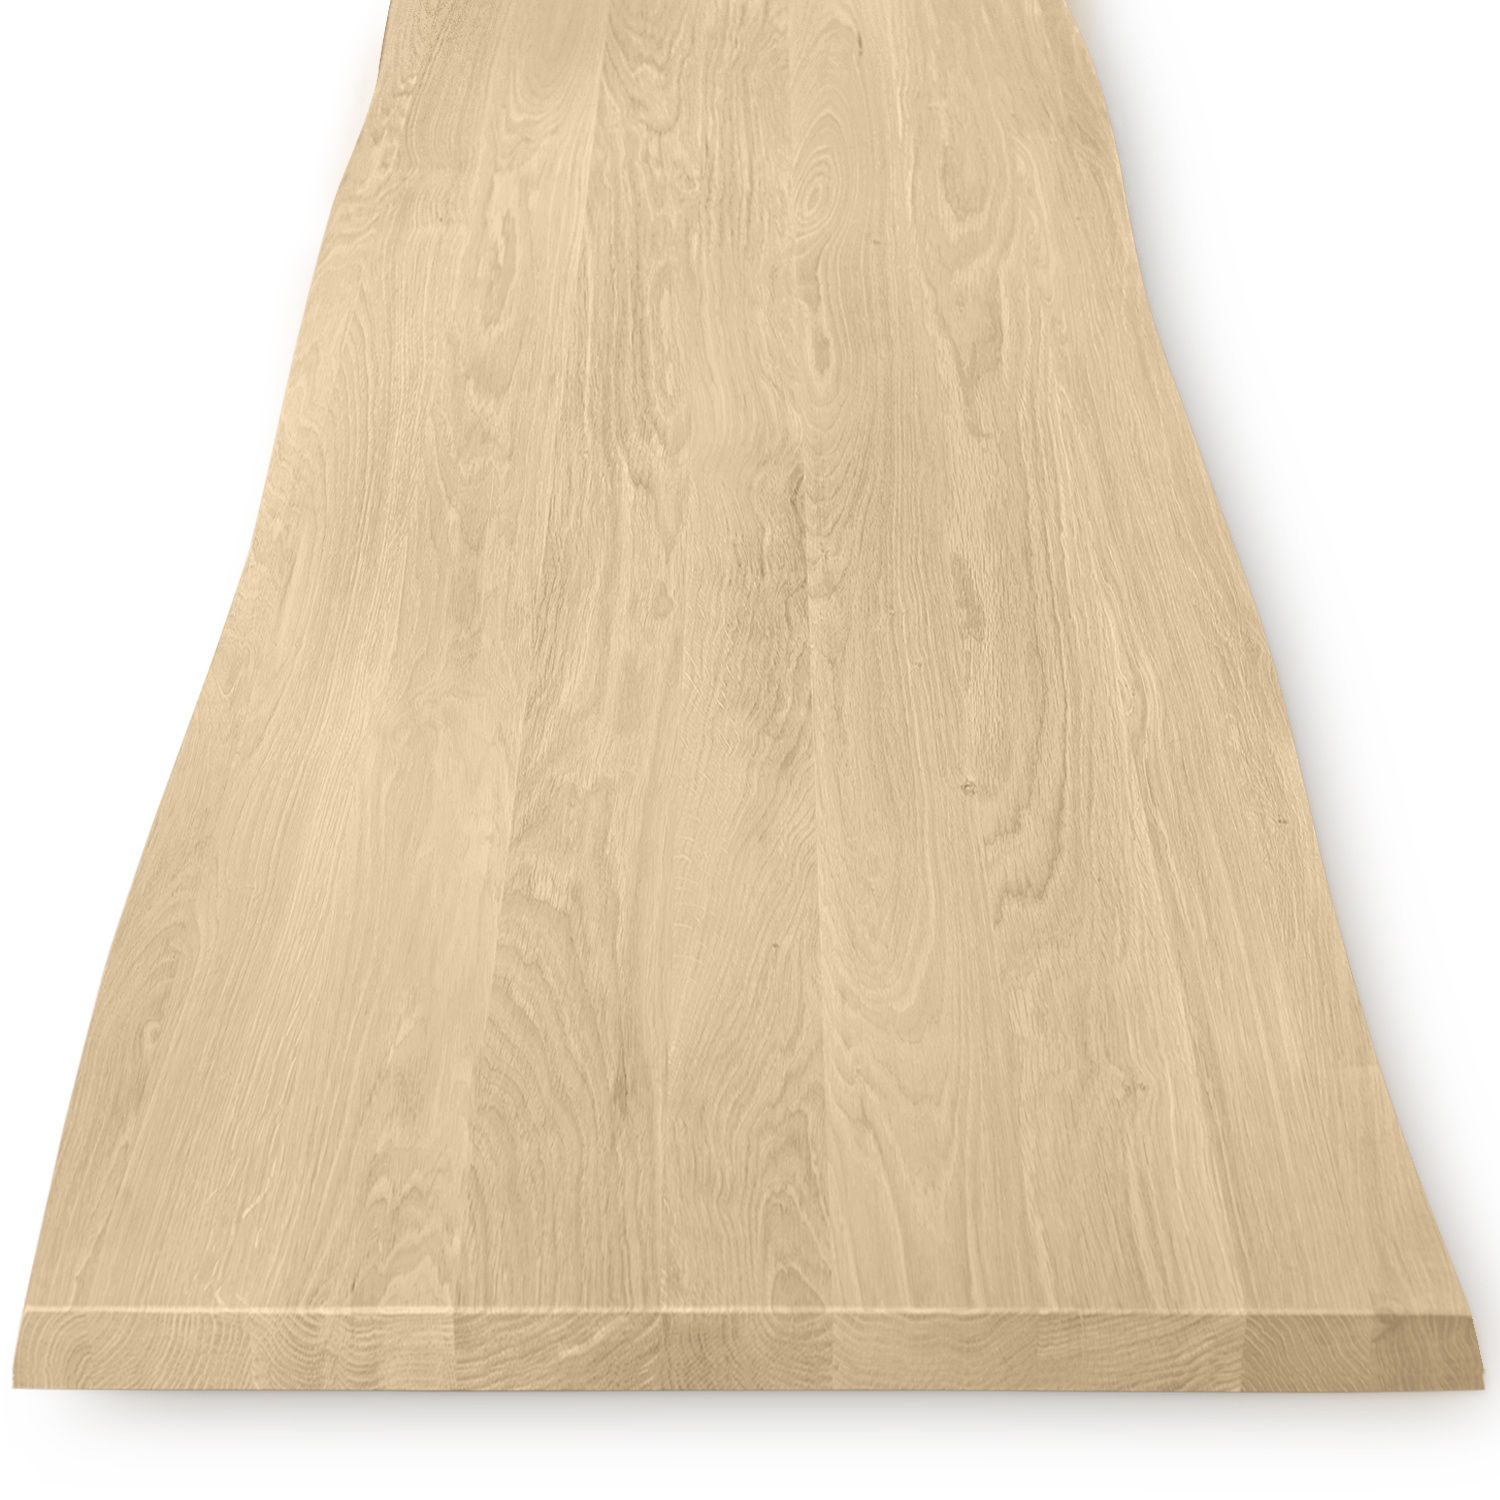  Tischplatte Eiche - mit Baumkante (Optik) - nach Maß - 4 cm dick - Eichenholz A-Qualität - Eiche Tischplatte massiv mit natürlichen Baumkant - verleimt & künstlich getrocknet (HF 8-12%) - 50-120x50-350 cm